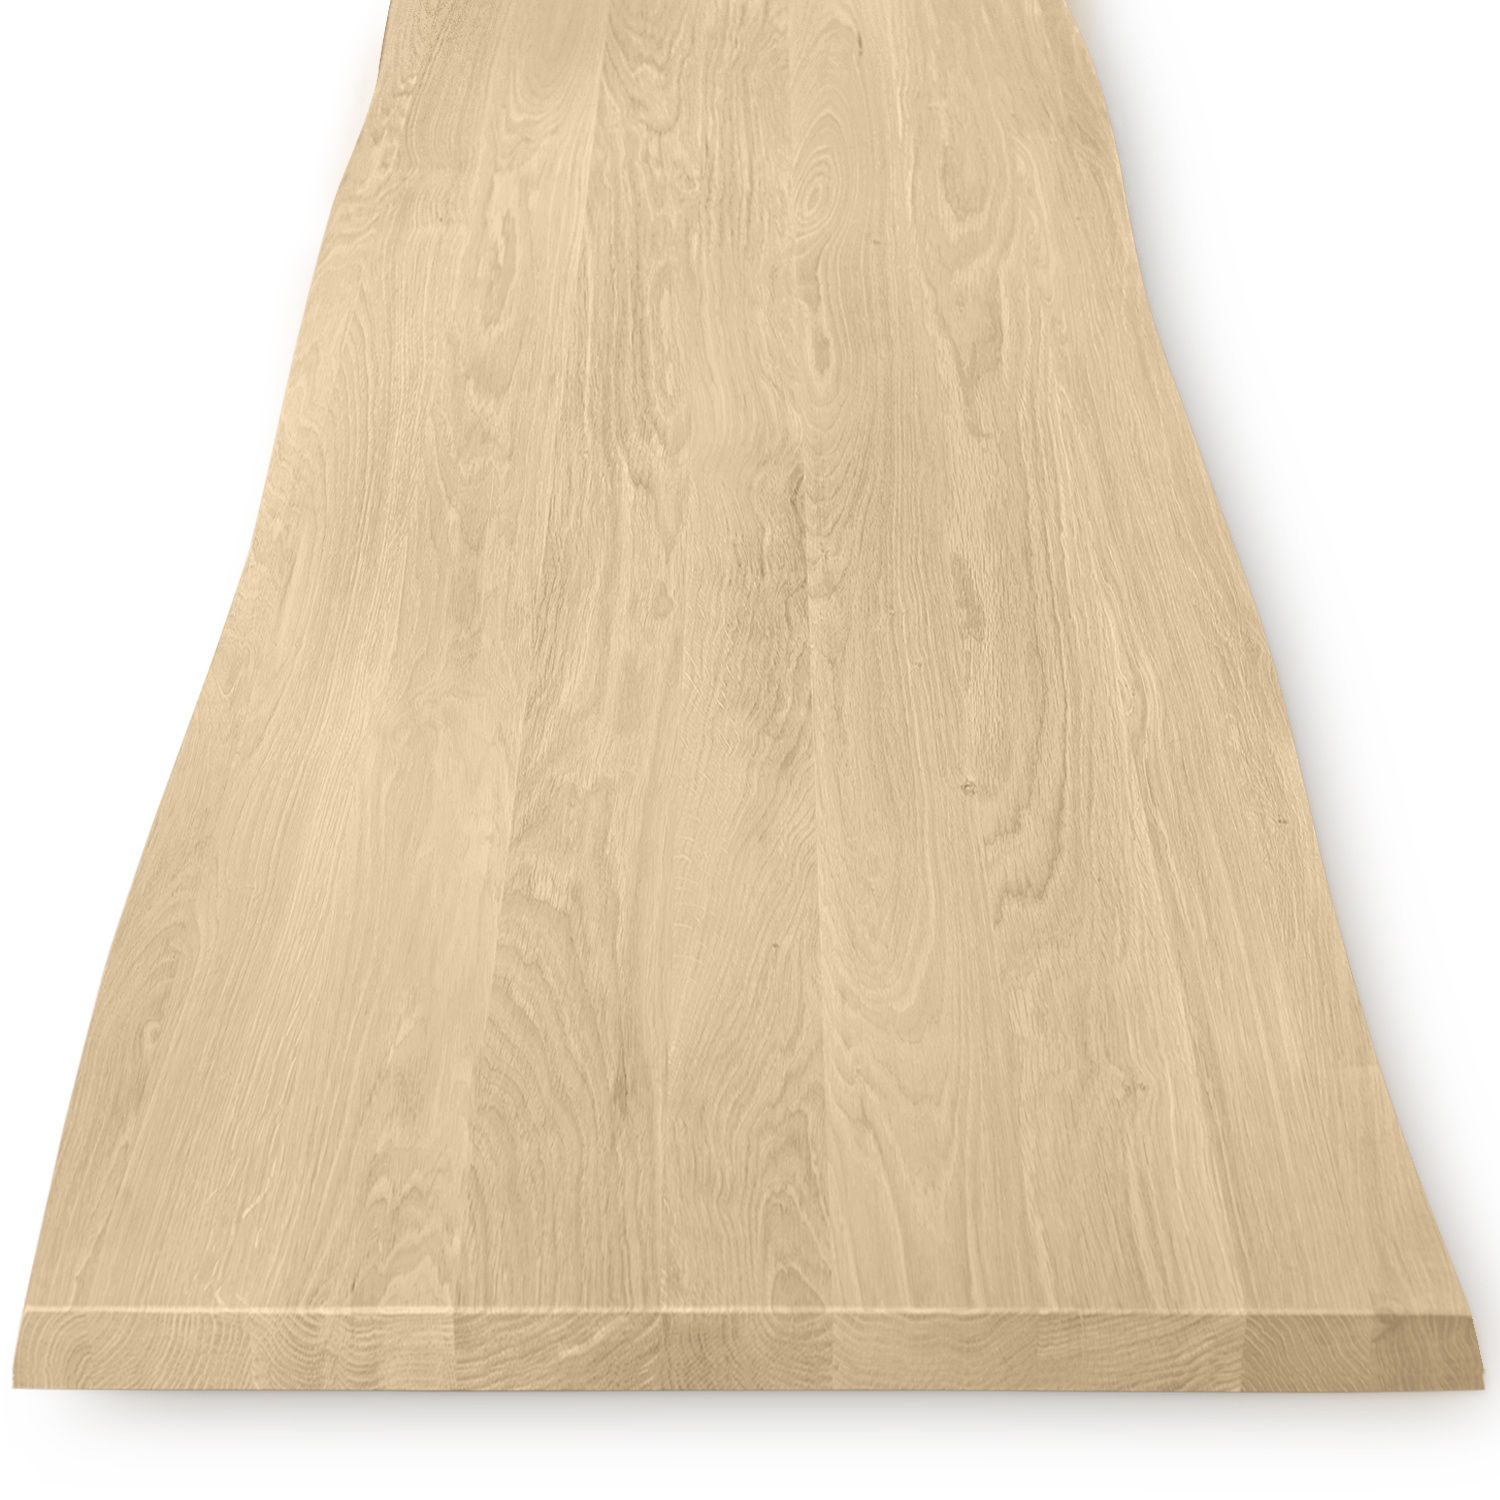  Tischplatte Eiche - mit Baumkante (Optik) - nach Maß - 4 cm dick - Eichenholz A-Qualität - Eiche Tischplatte massiv mit natürlichen Baumkant - verleimt & künstlich getrocknet (HF 8-12%) - 50-120x50-350 cm